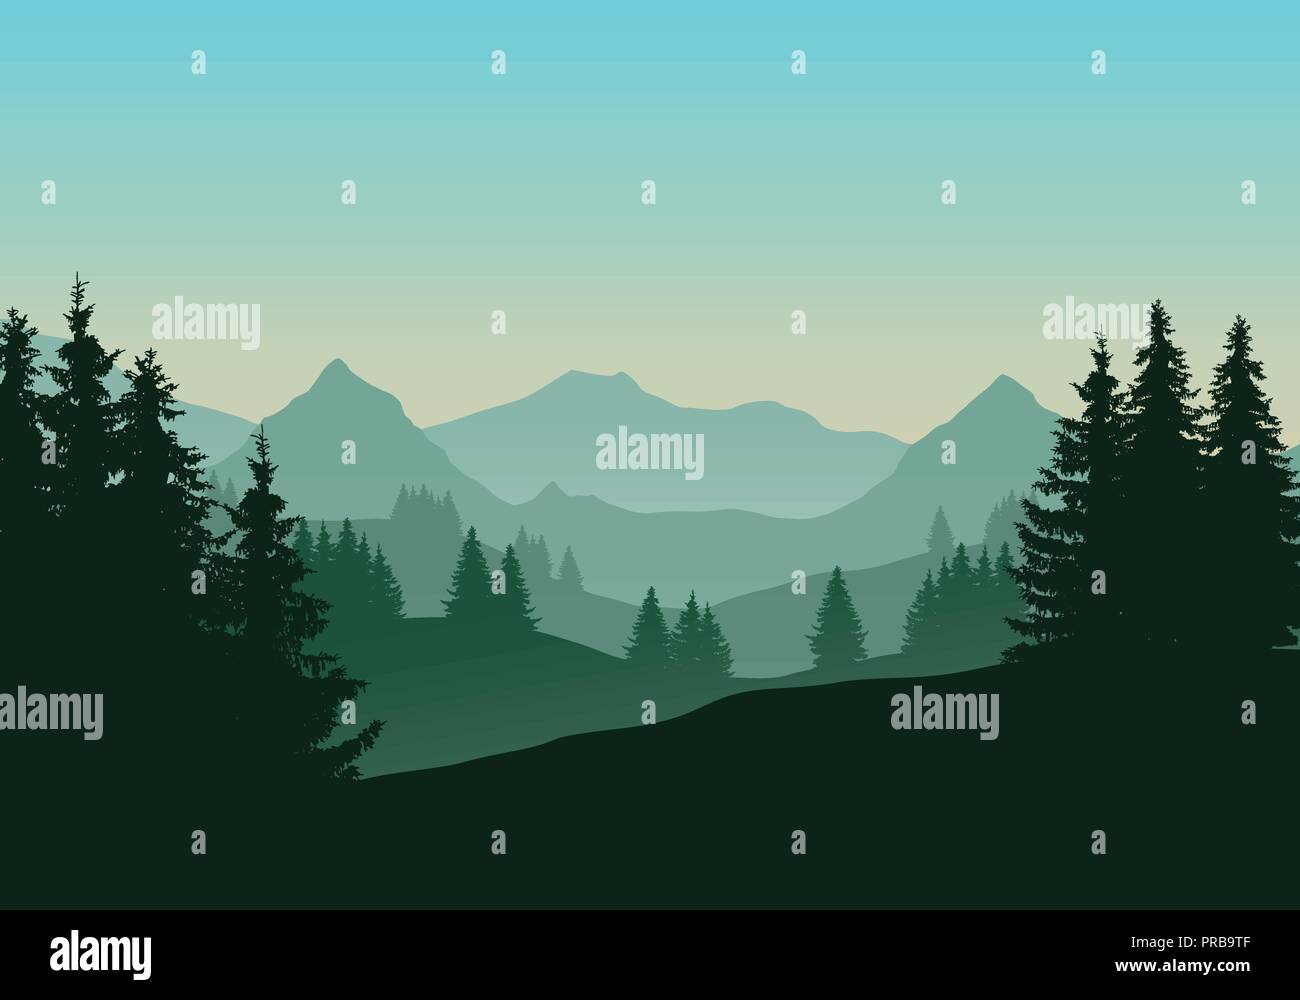 Realistische Darstellung der Berglandschaft mit Nadelwald und Bäume, unter dem grünen blauen Himmel mit Dawn-Vektor Stock Vektor